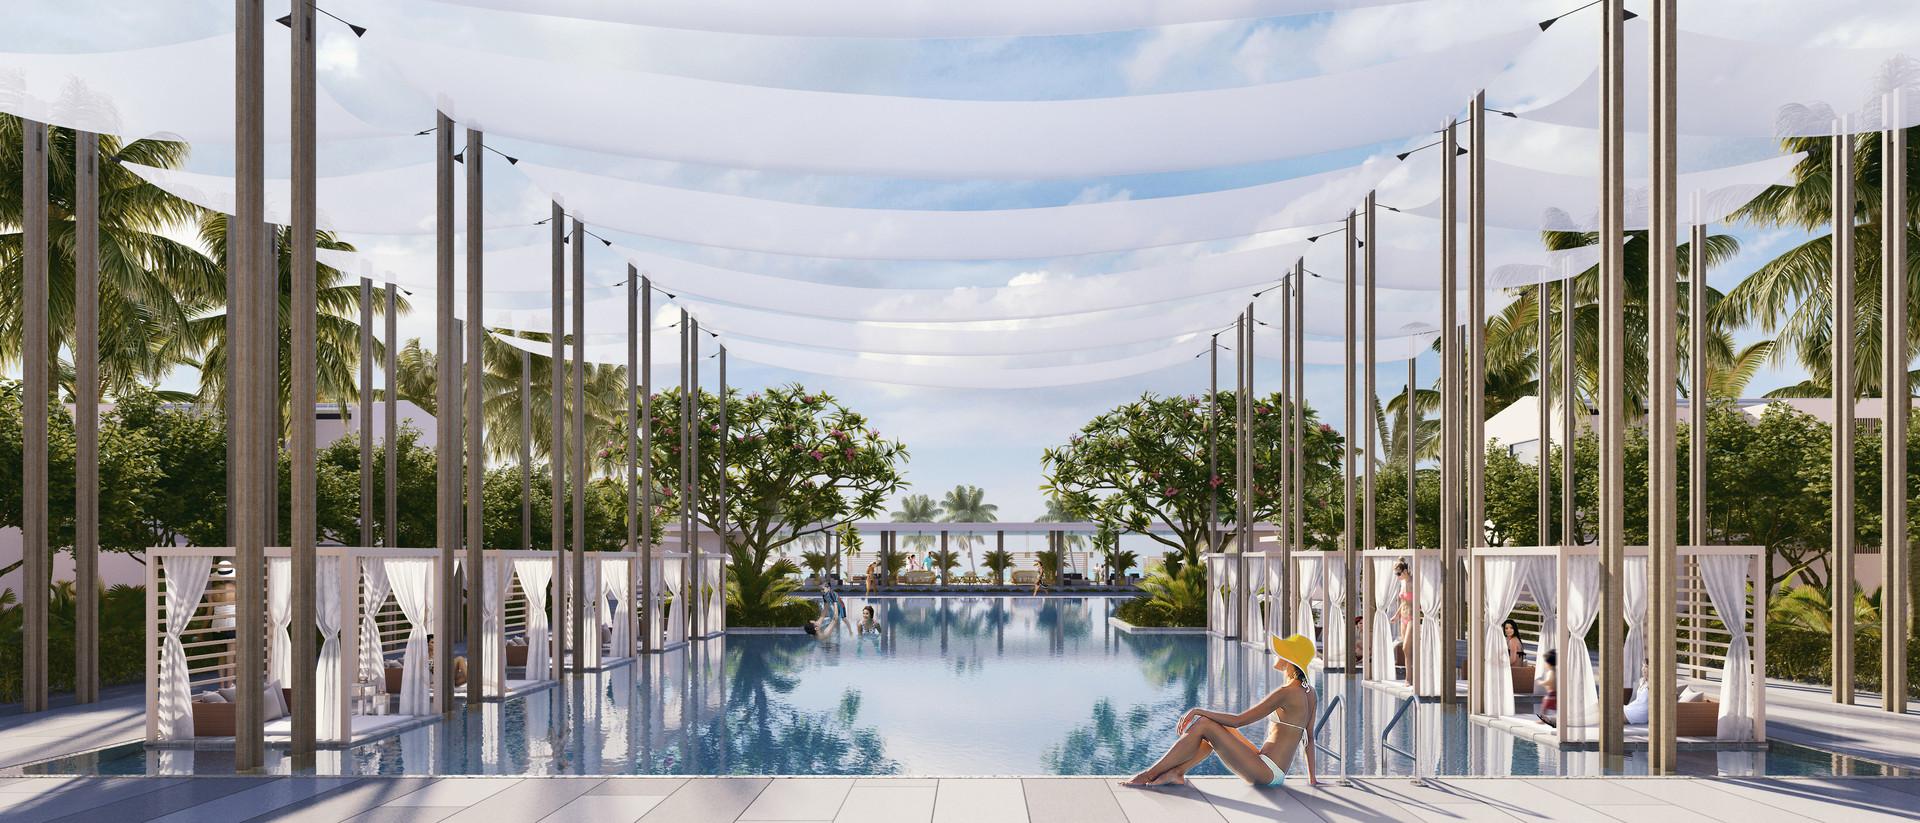 Regent Phu Quoc – Dấu ấn nổi bật của thị trường khách sạn nghỉ dưỡng cao cấp tại Việt Nam